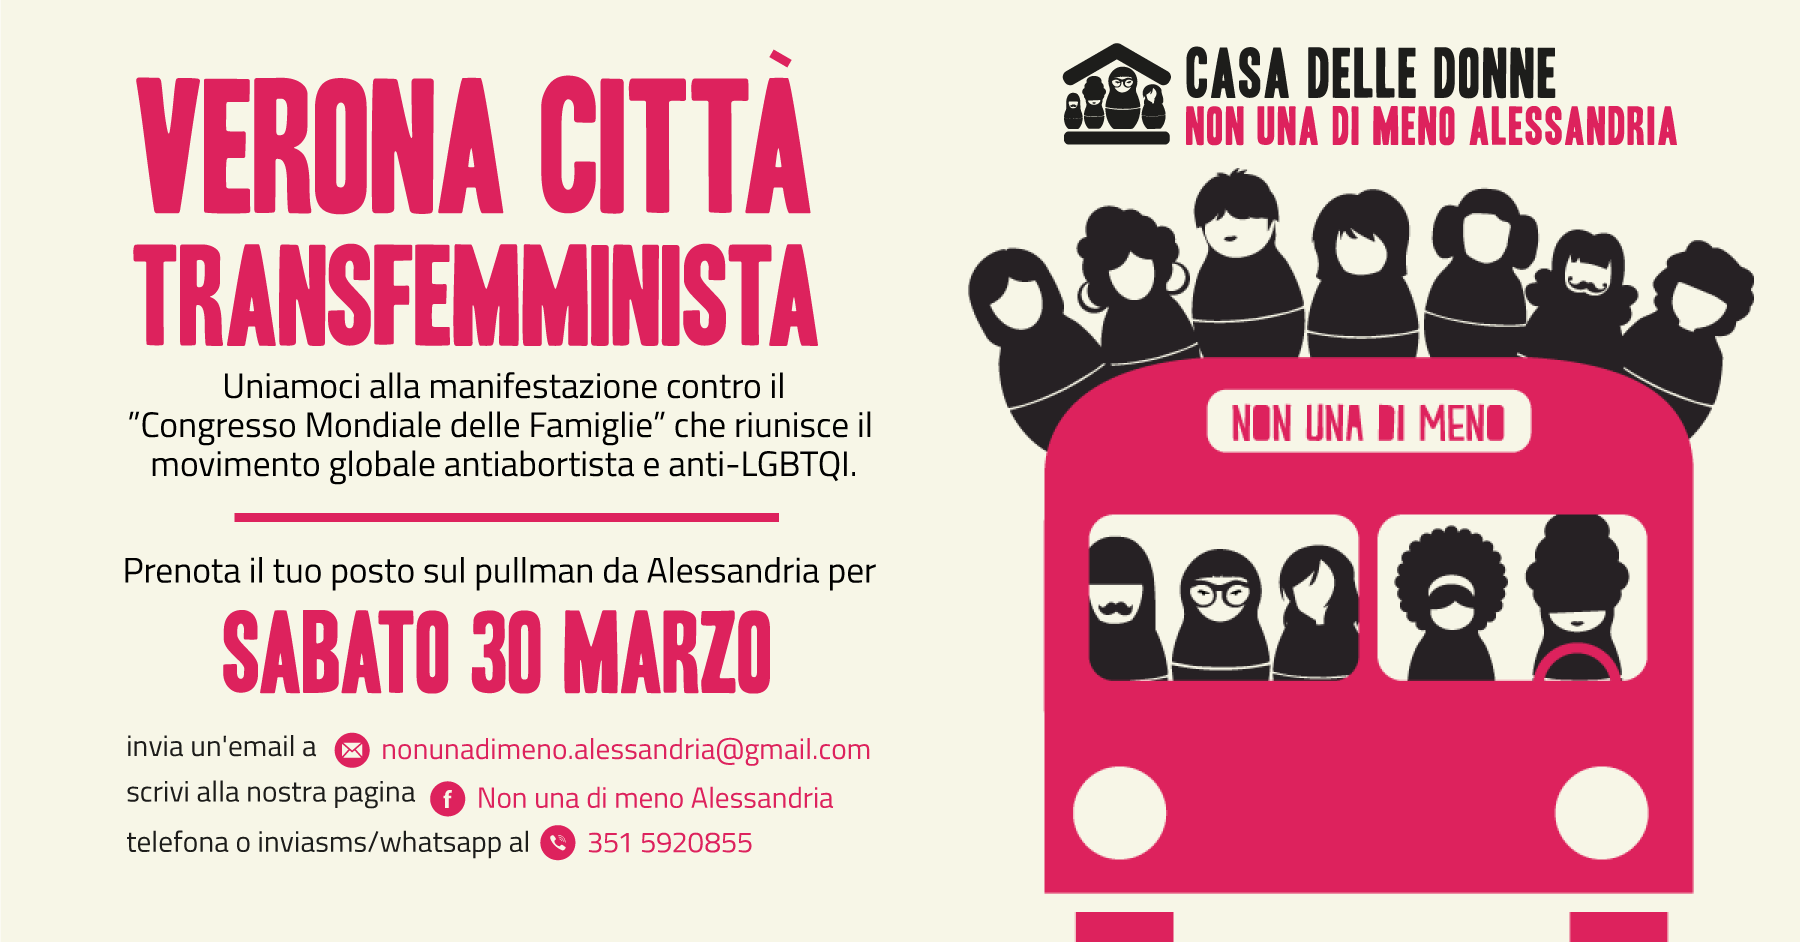 sabato-30-marzo-tutt-a-verona-per-la-citta-transfemminista-contro-il-congresso-mondiale-delle-famiglie